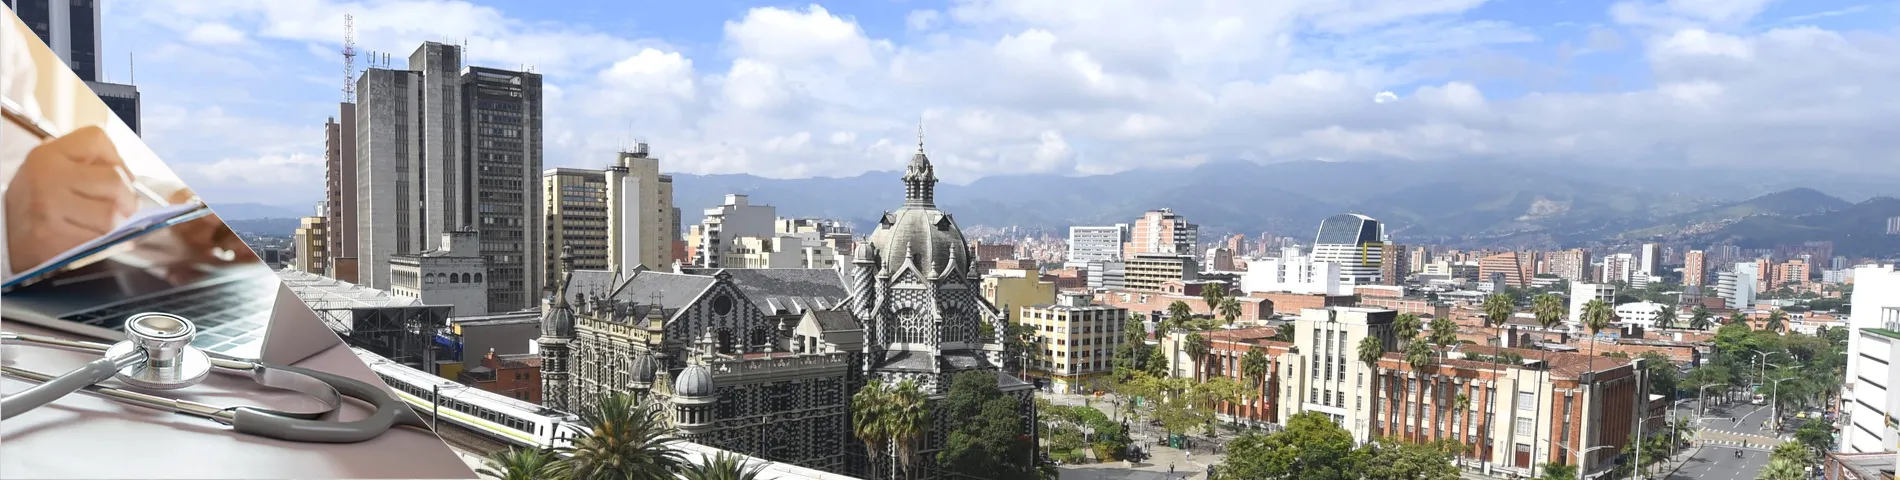 Medellín - Španělština pro Doktory a sestry